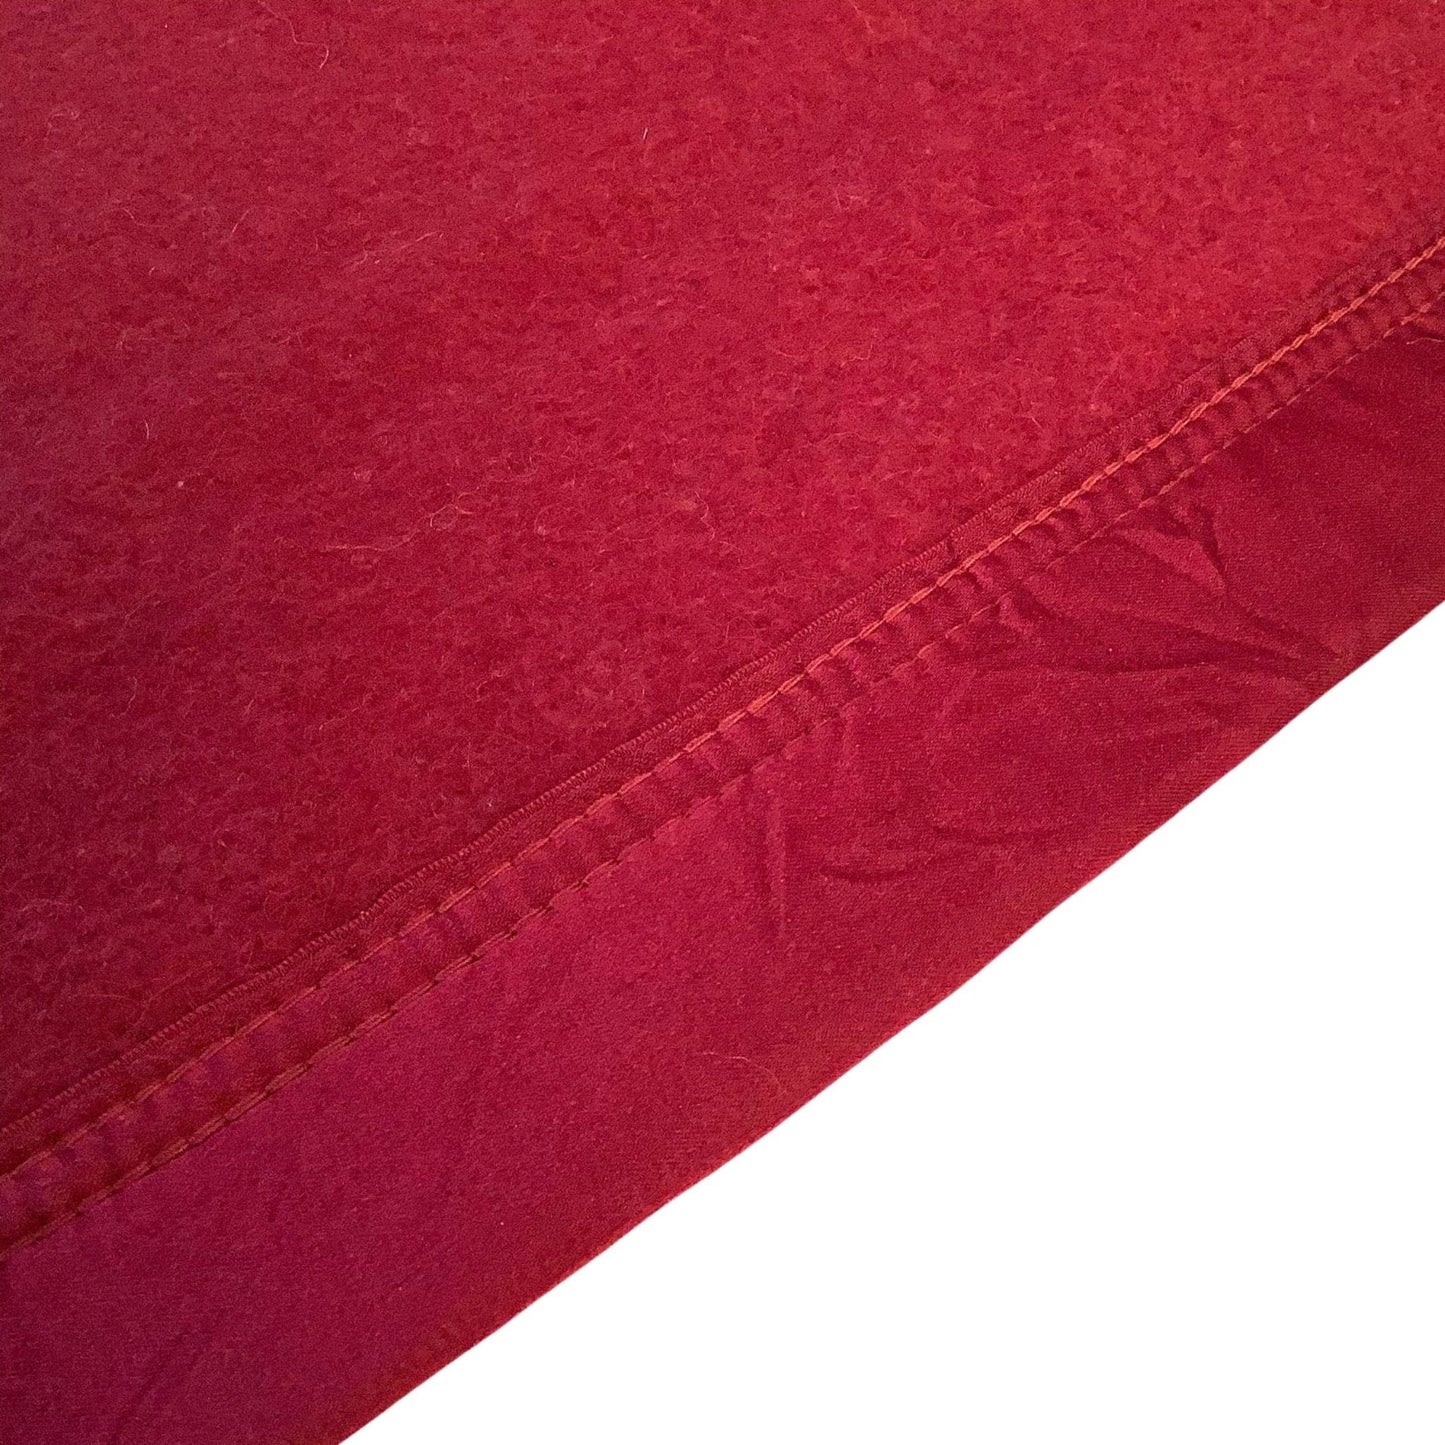 1950s Edmonds Wool Blanket Red / Wool / Vintage 1950s